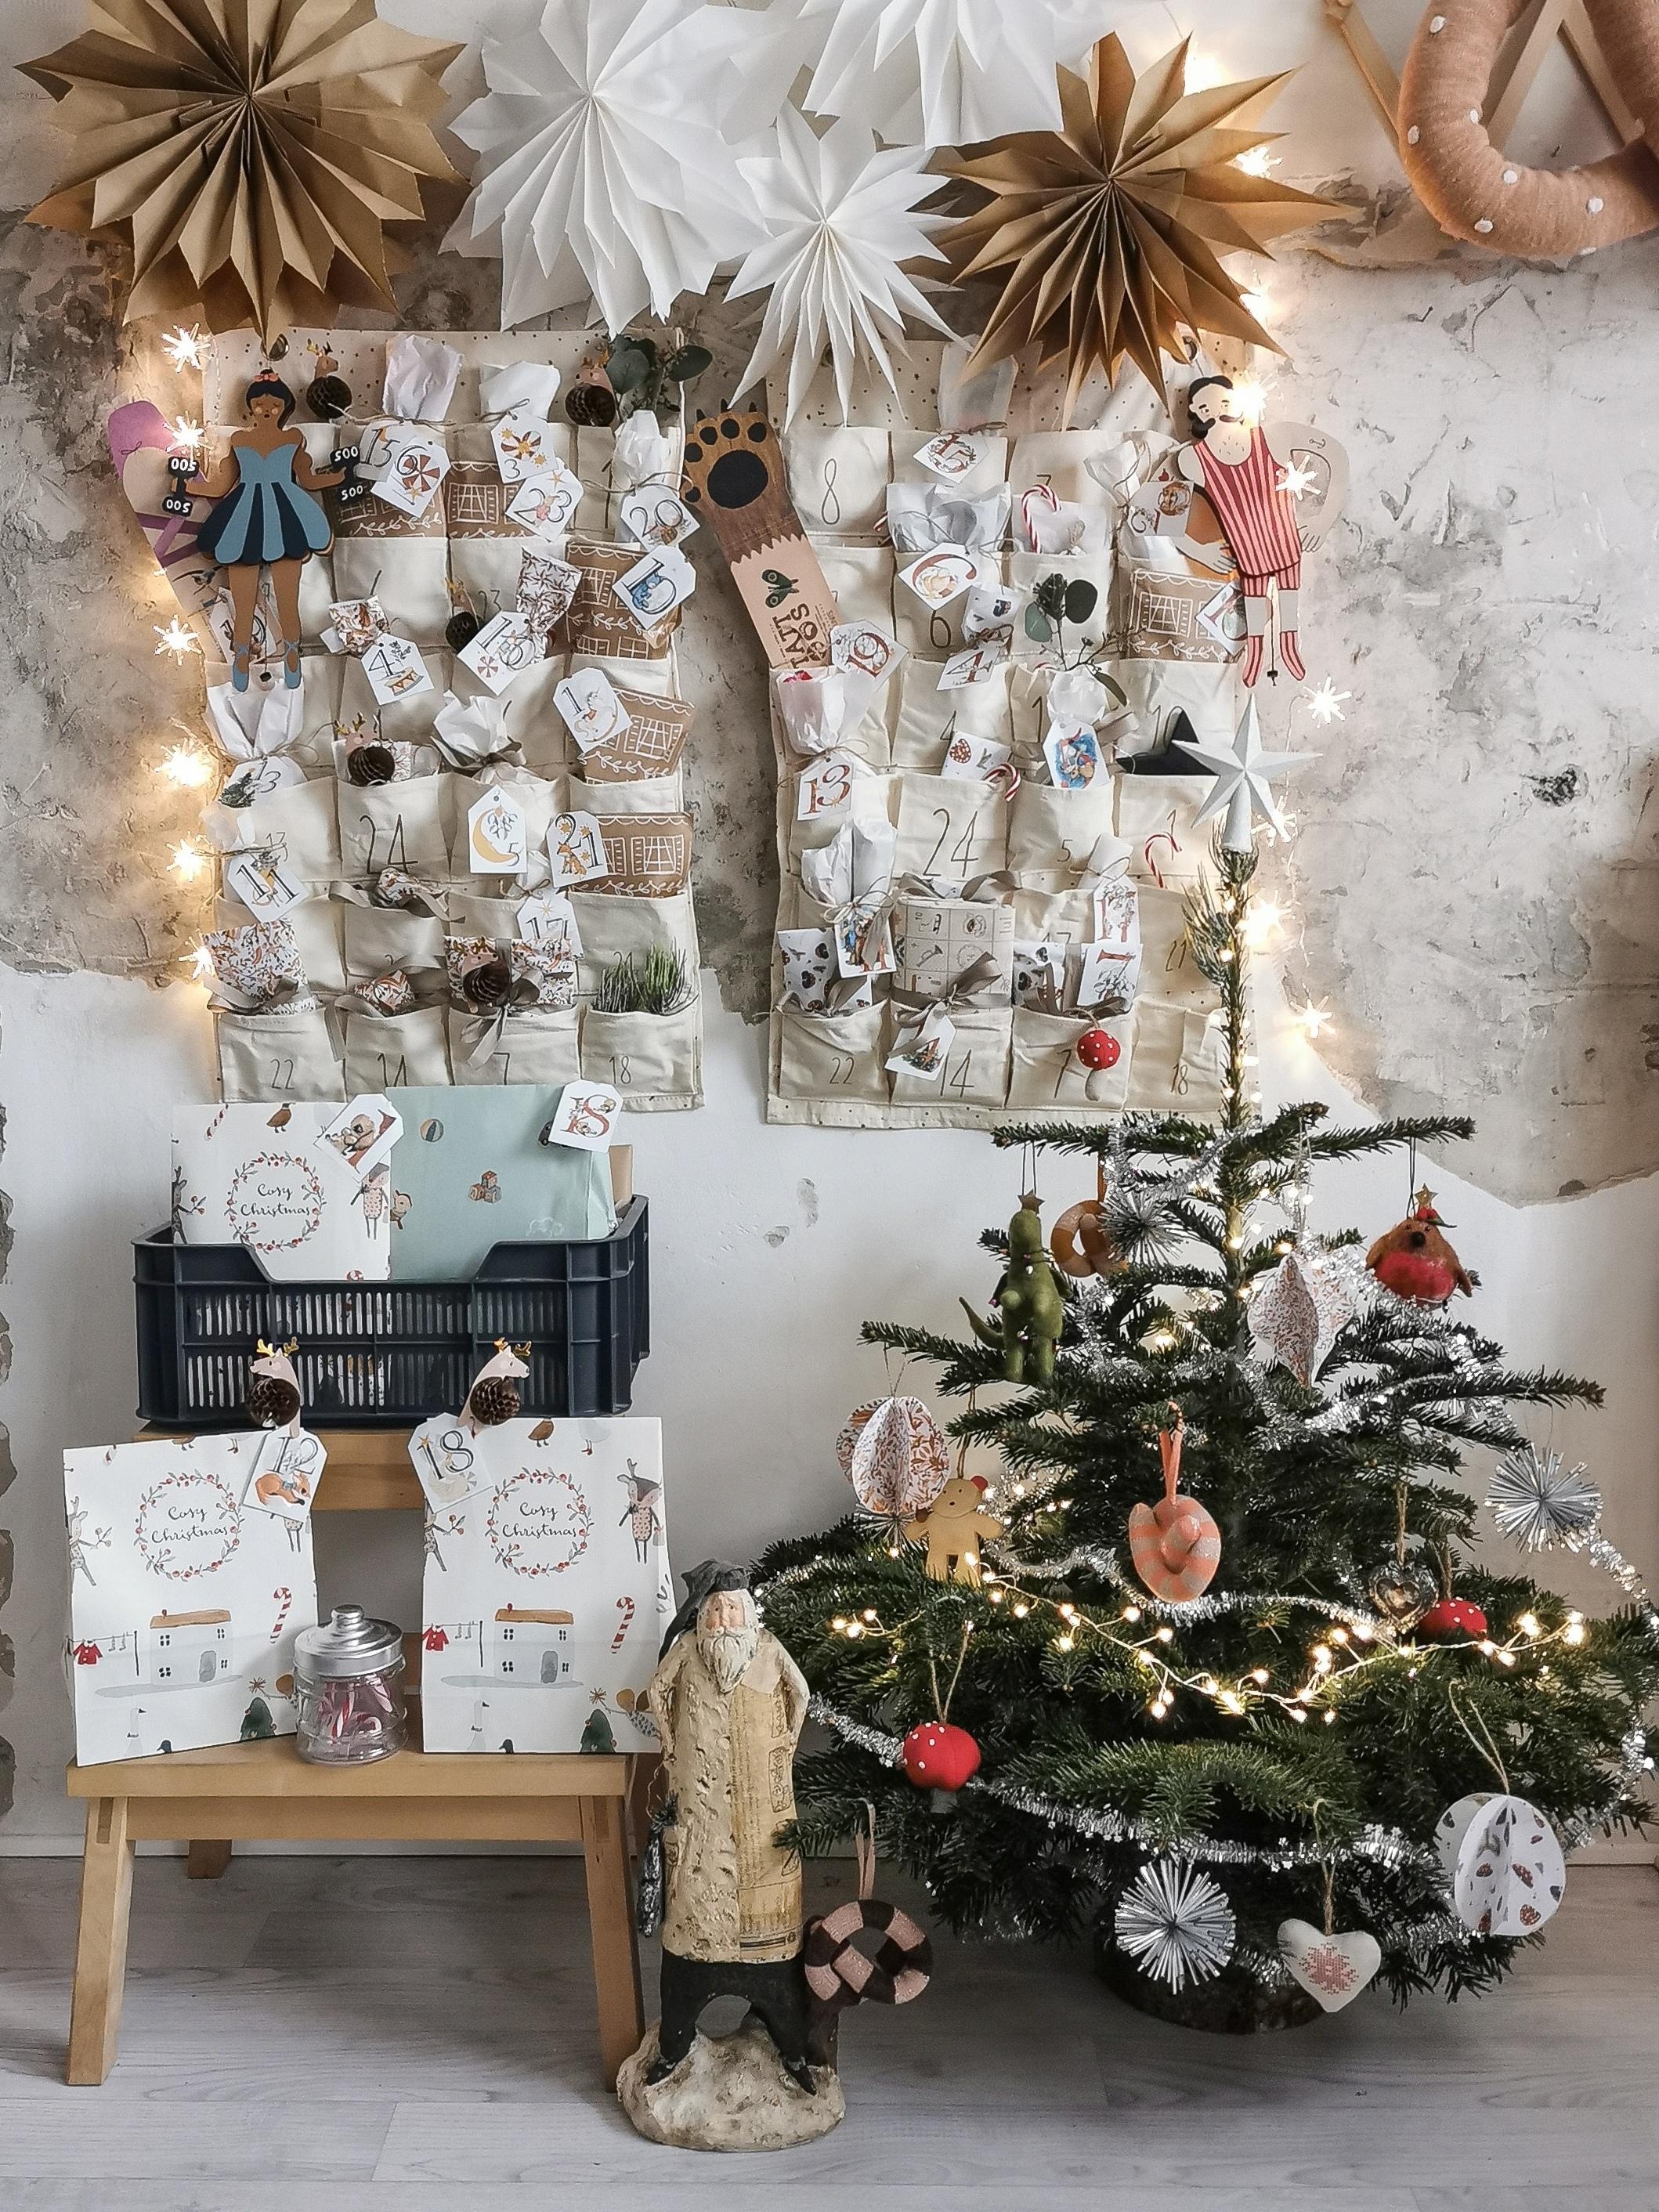 Die #adventskalender der Kinder hängen schonmal und dieses Jahr haben sie sogar einen eigenen kleinen #weihnachtsbaum #weihnachtsdeko